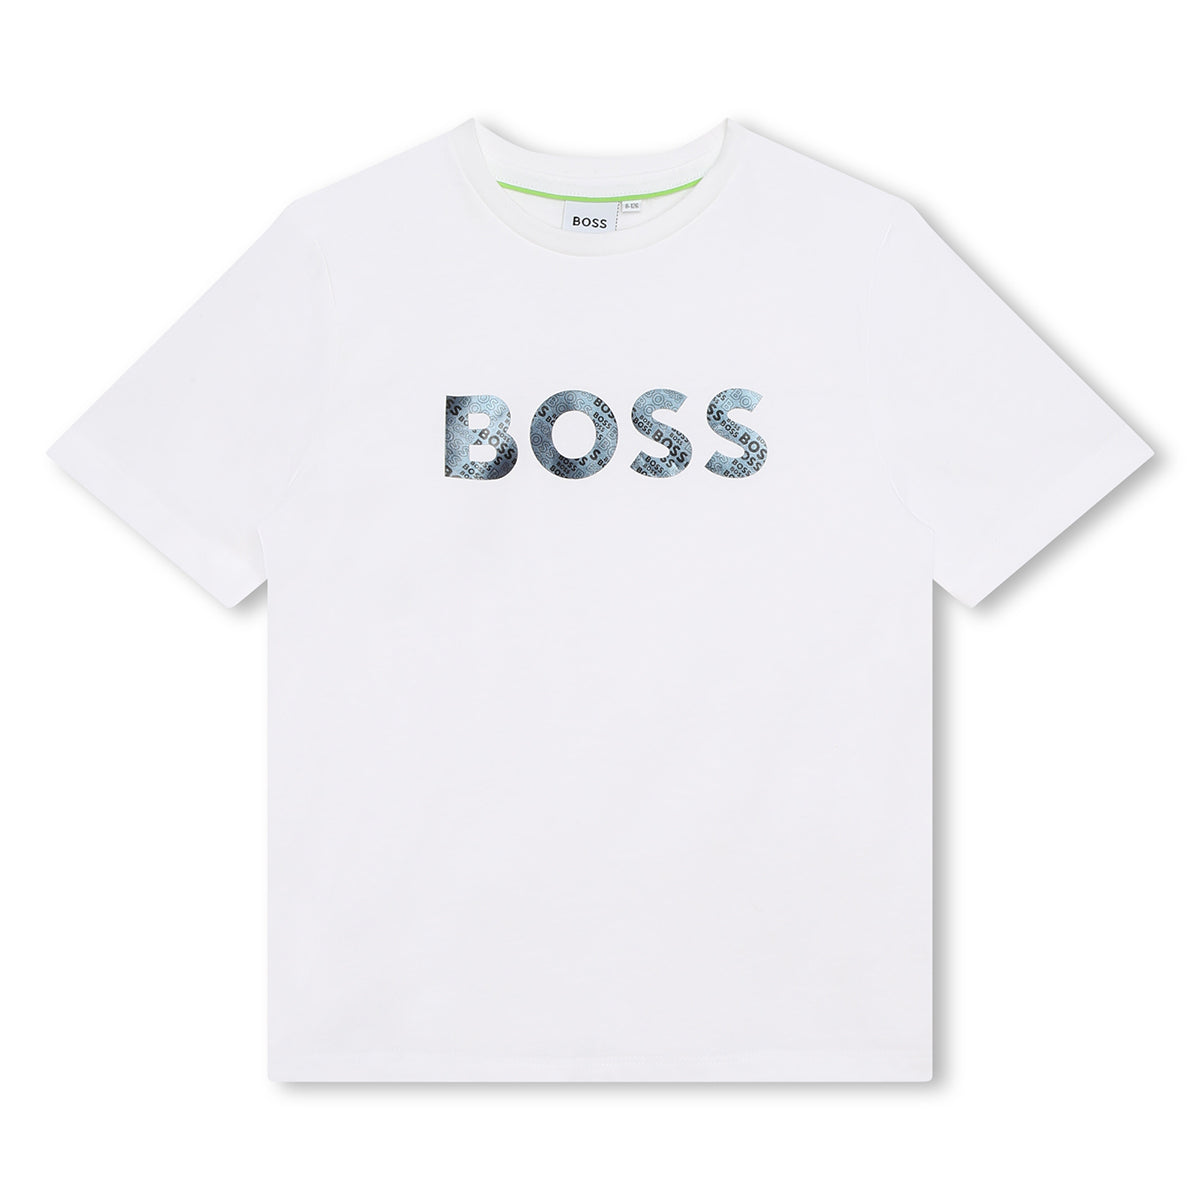 חולצת טי שרט BOSS לוגו מבריק לילדים